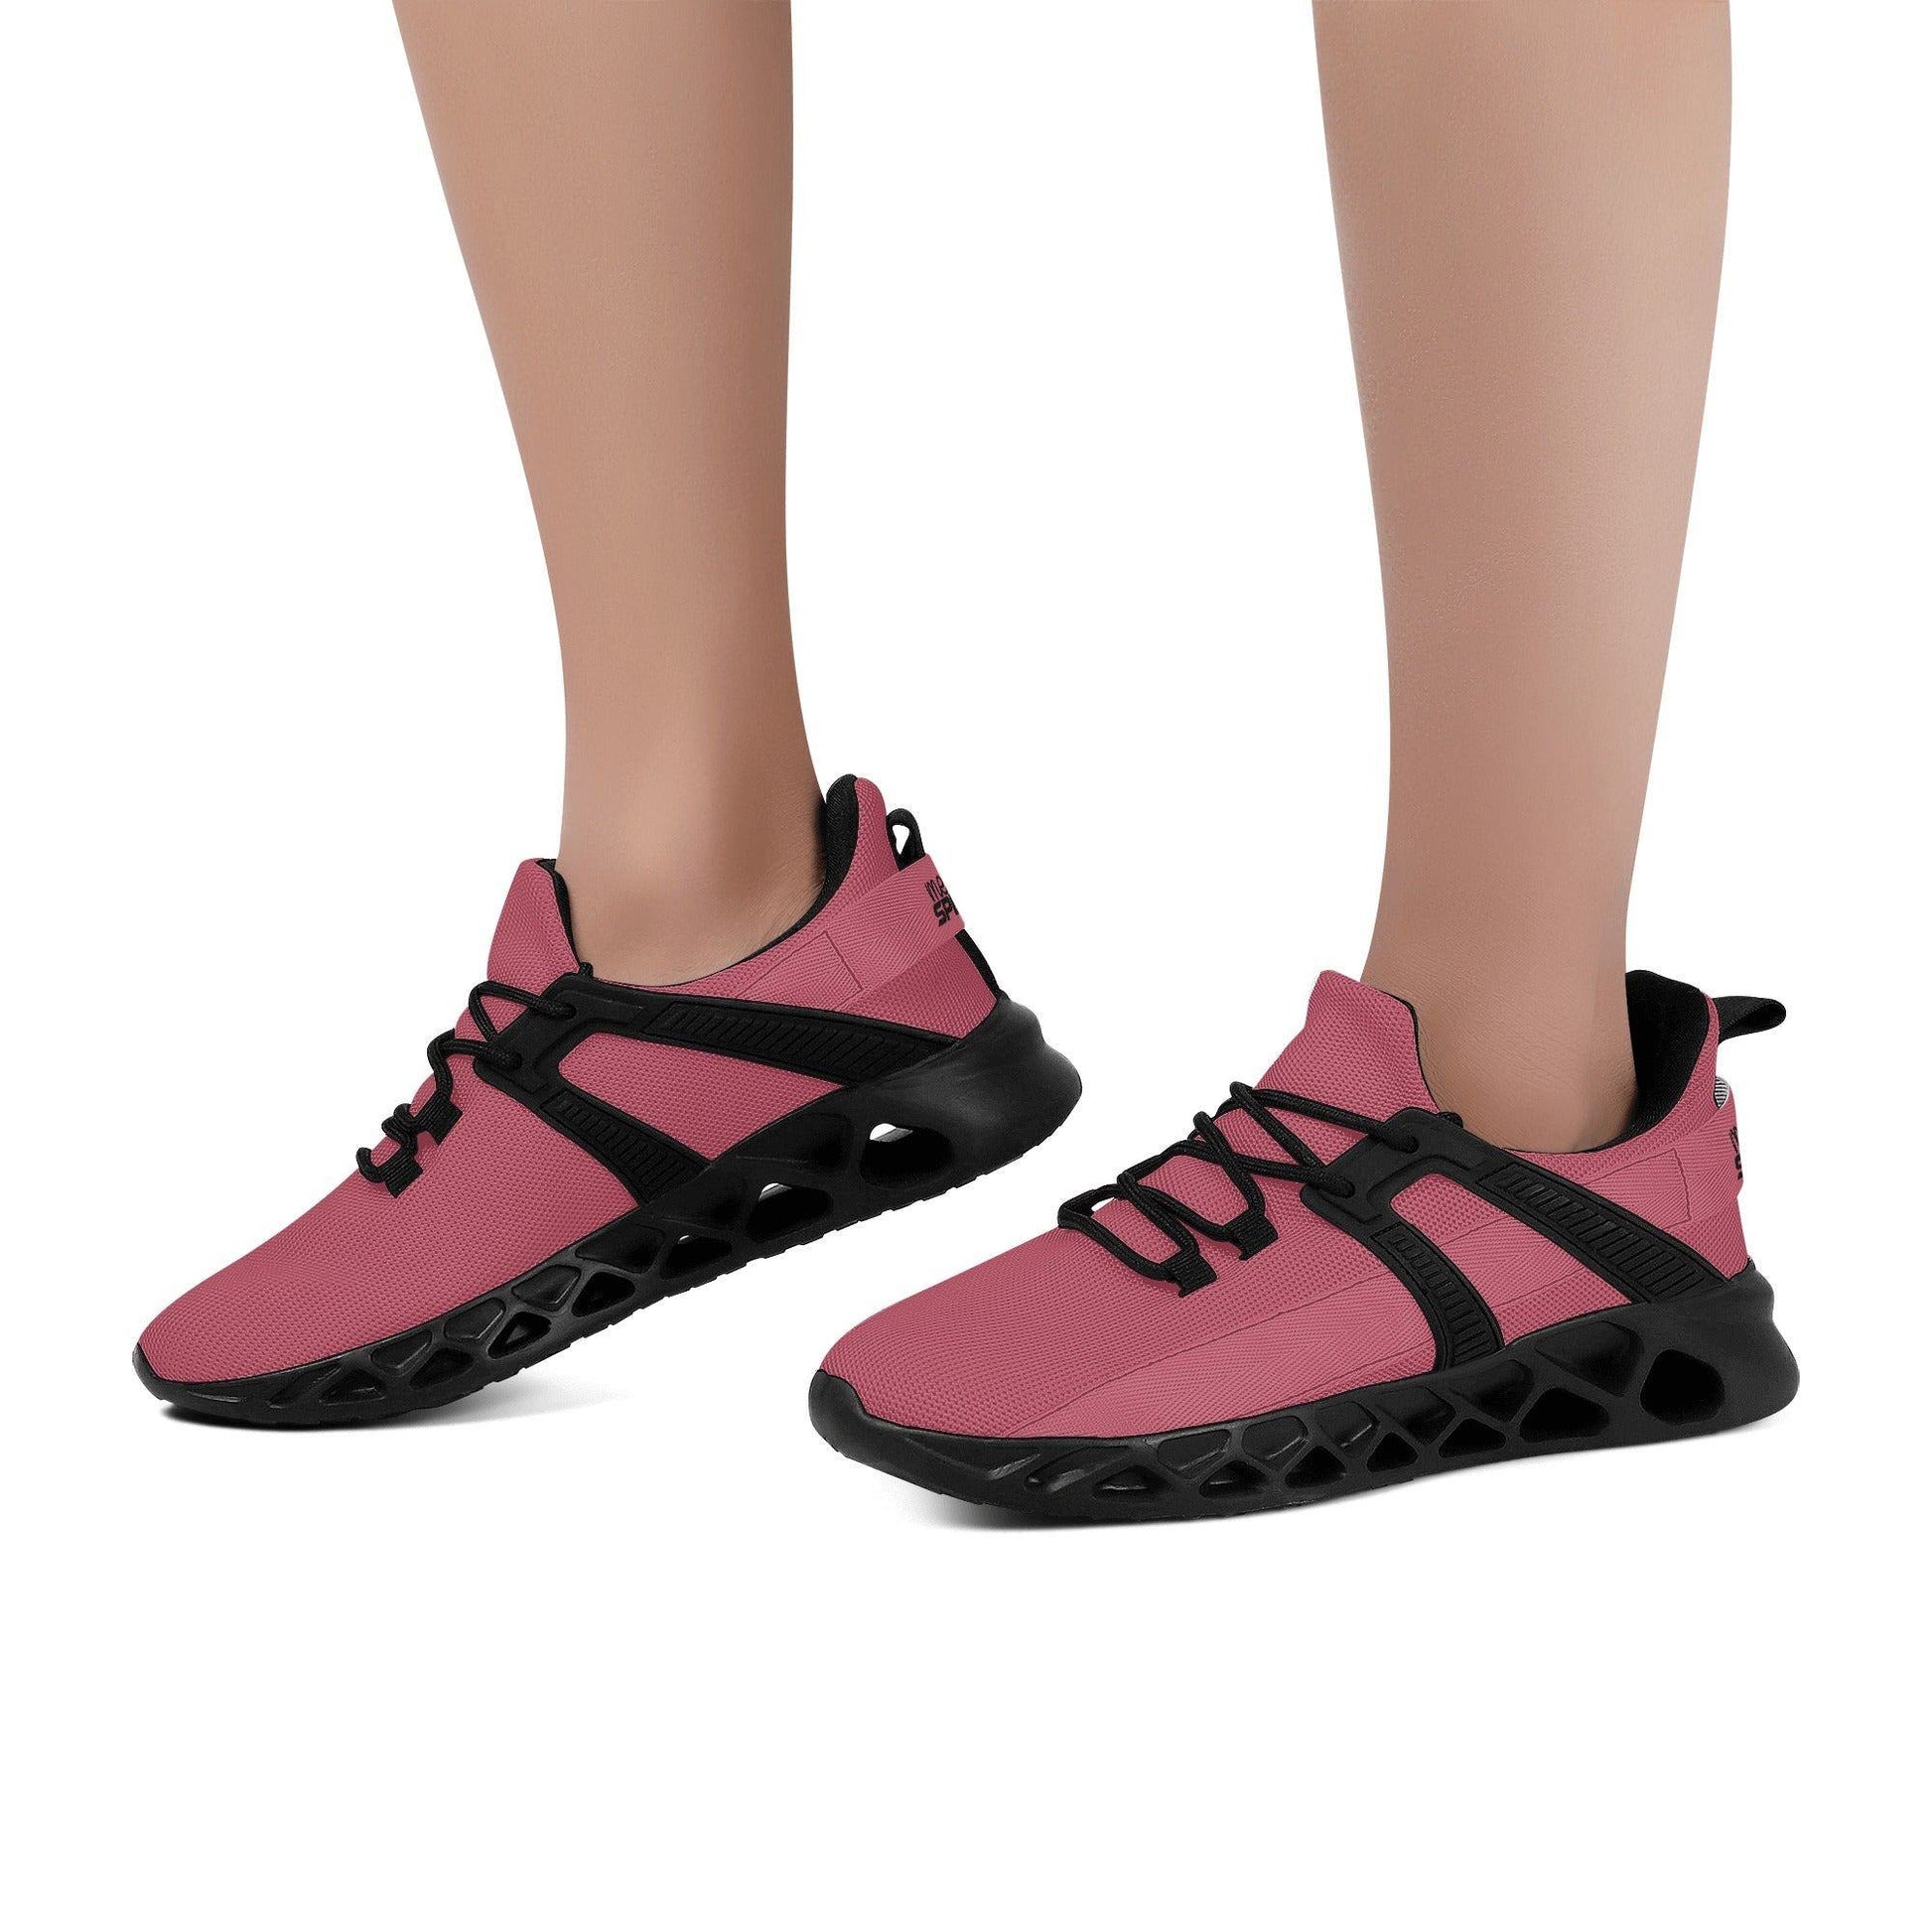 Hippie Pink Meeshy Speed Damen Laufschuhe -- Hippie Pink Meeshy Speed Damen Laufschuhe - undefined Laufschuhe | JLR Design